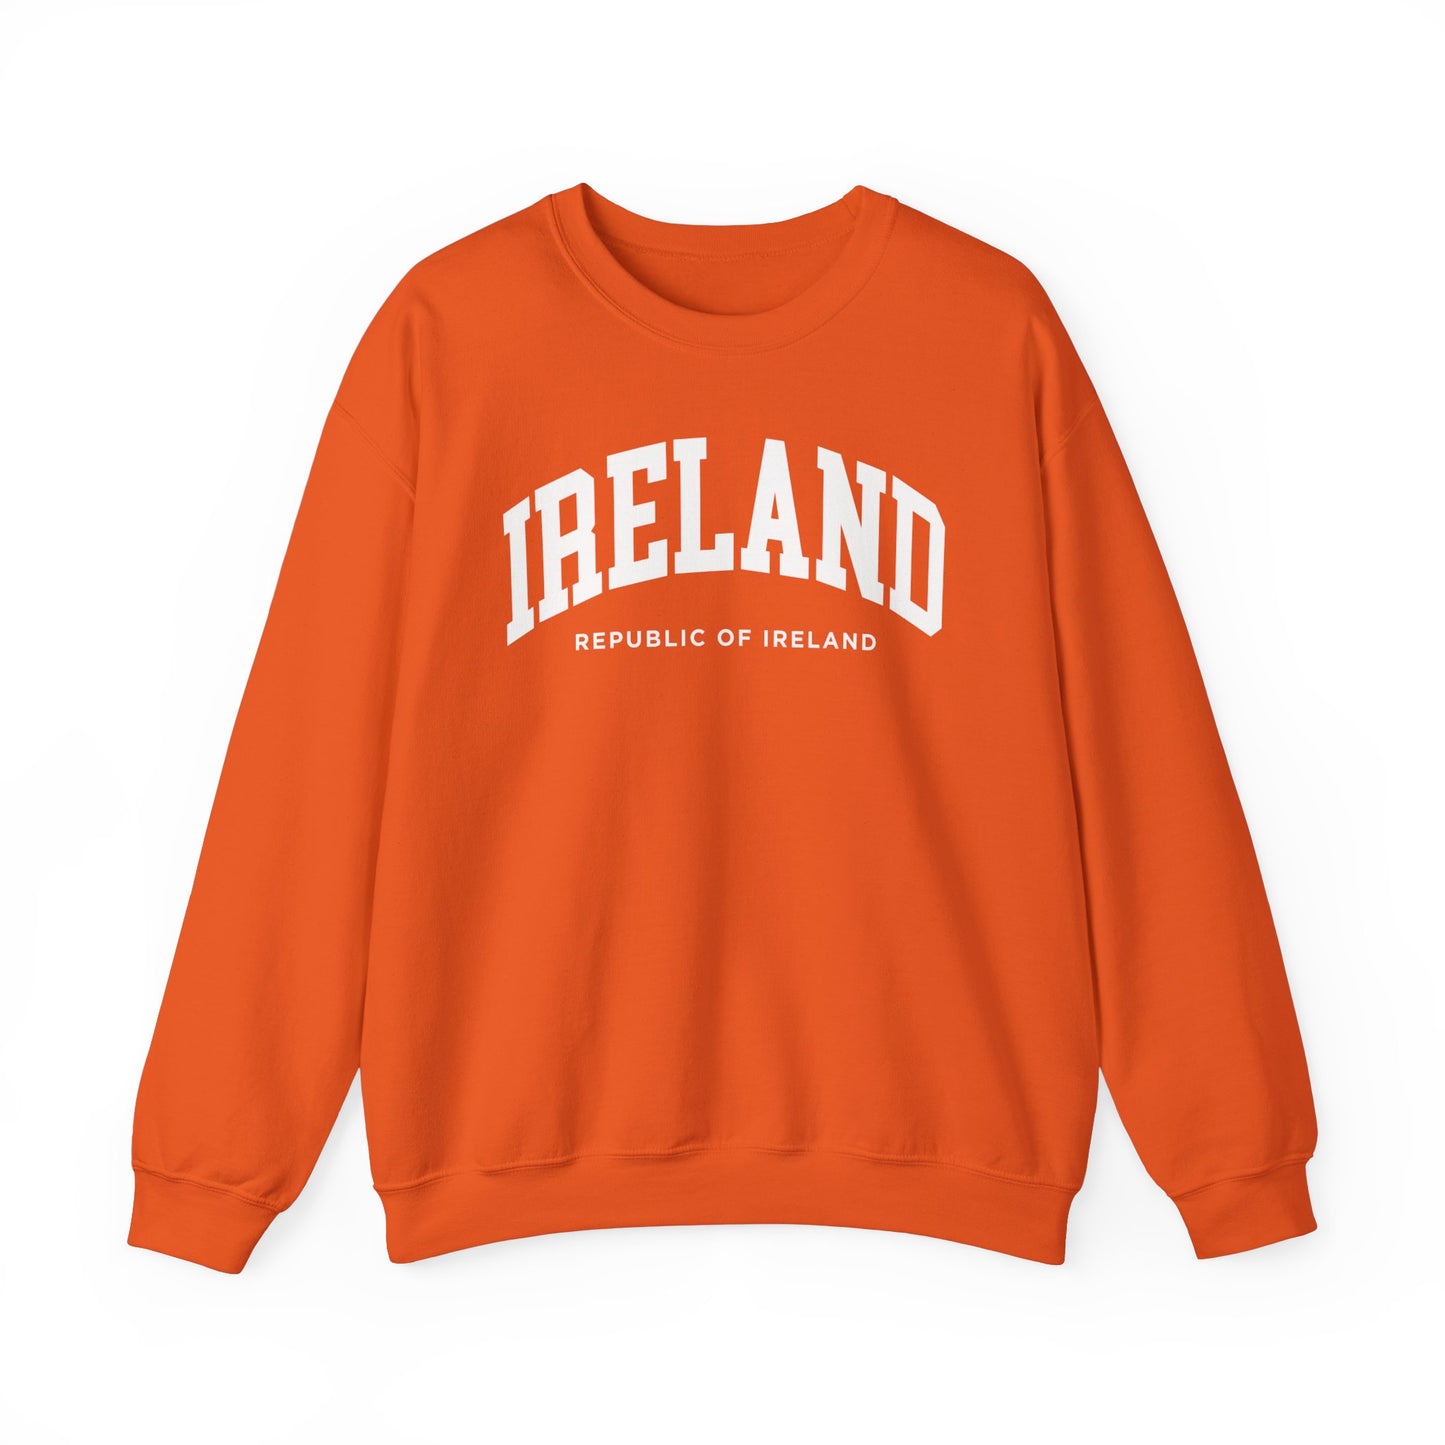 Ireland Sweatshirt